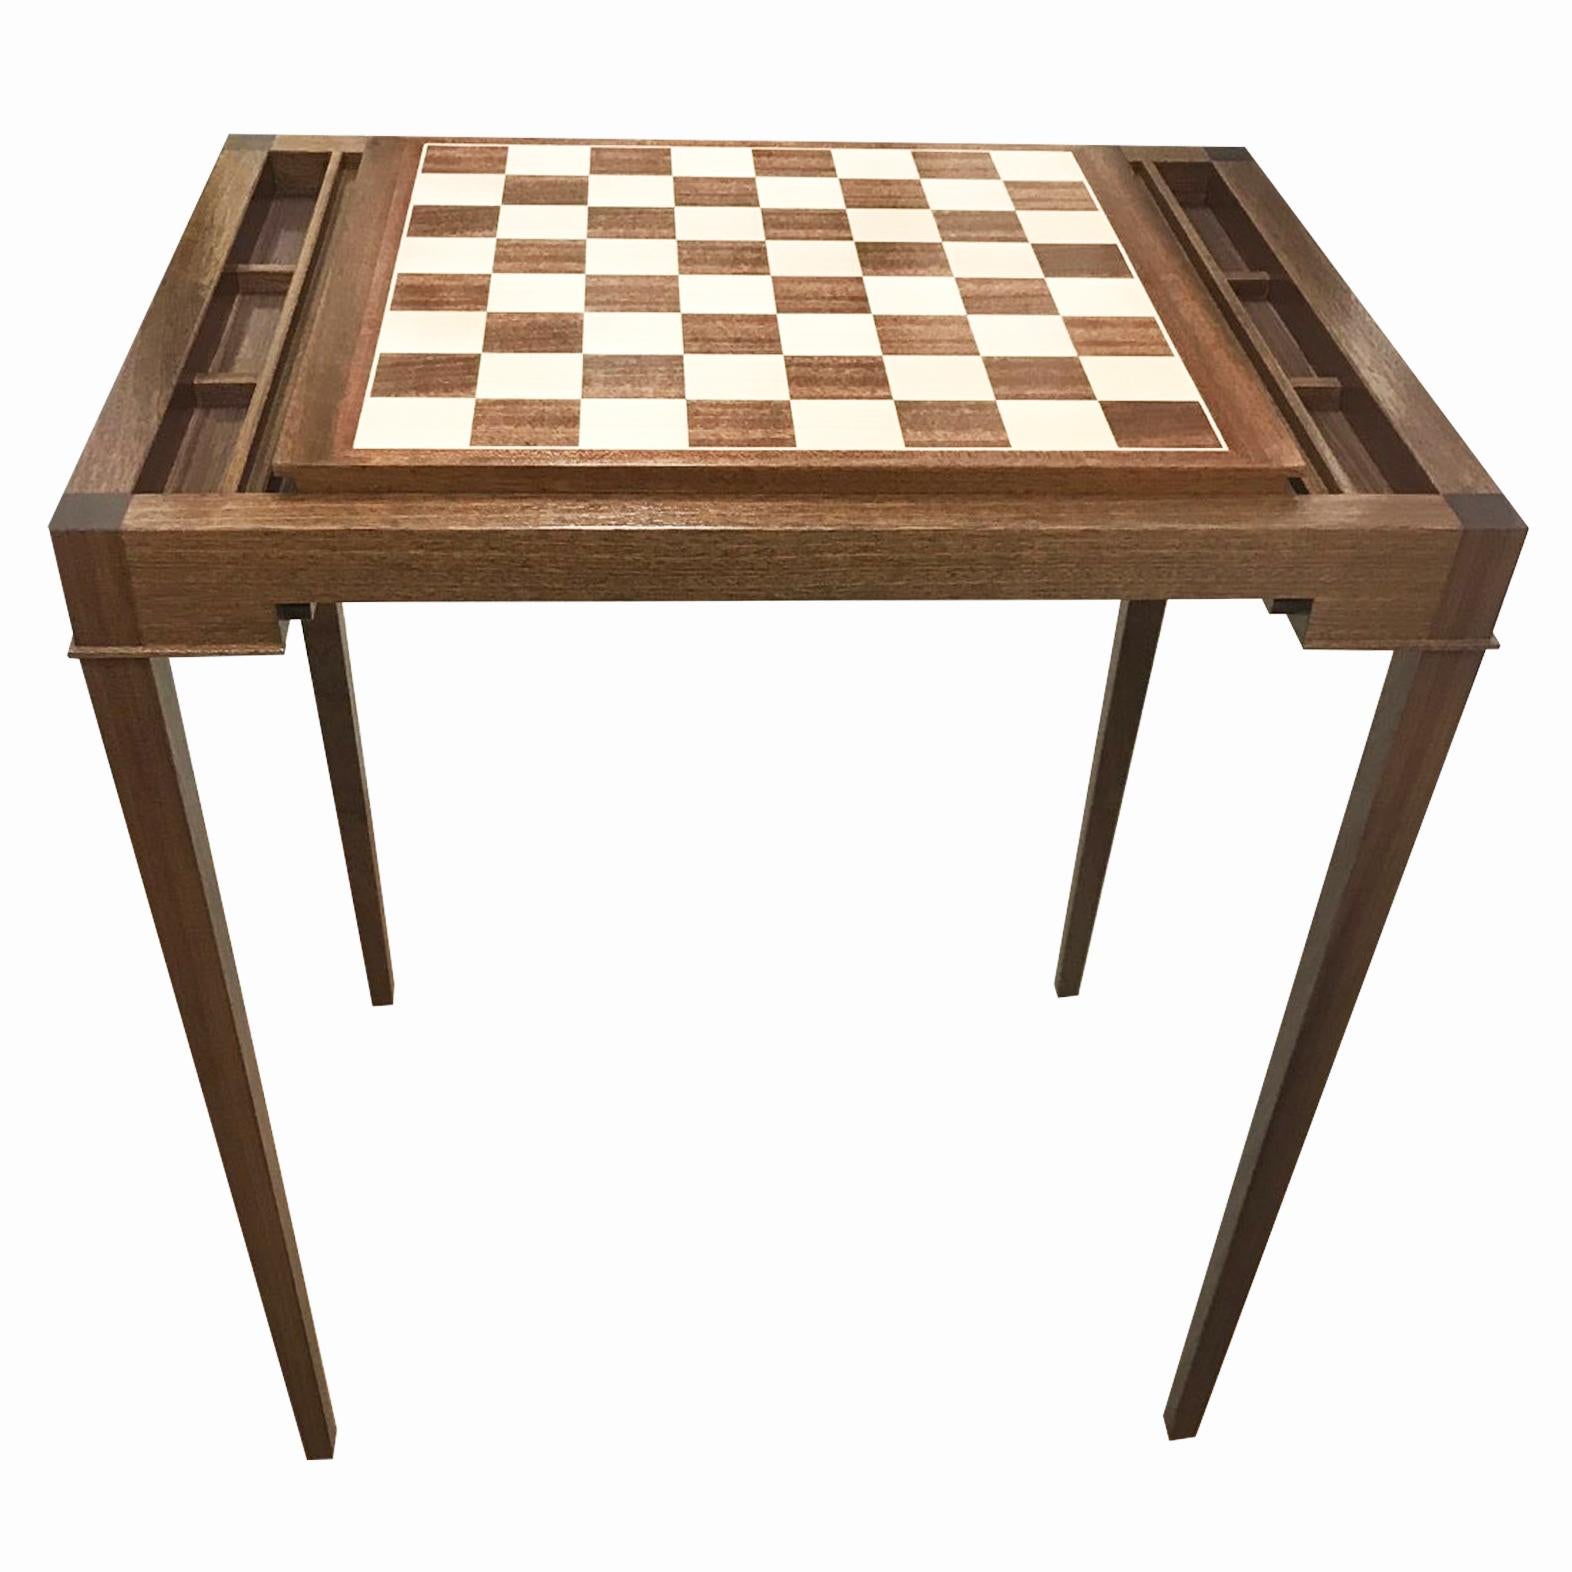 Verkauf nur eine Woche.  Maßgefertigter Backgammon-Tisch aus Walnussholz, der sich mit einem ausziehbaren Brett in ein Schachspiel verwandeln lässt. Kann in Ihrer bevorzugten Größe und Farbe hergestellt werden.

Neue Produktion. Auf Bestellung in